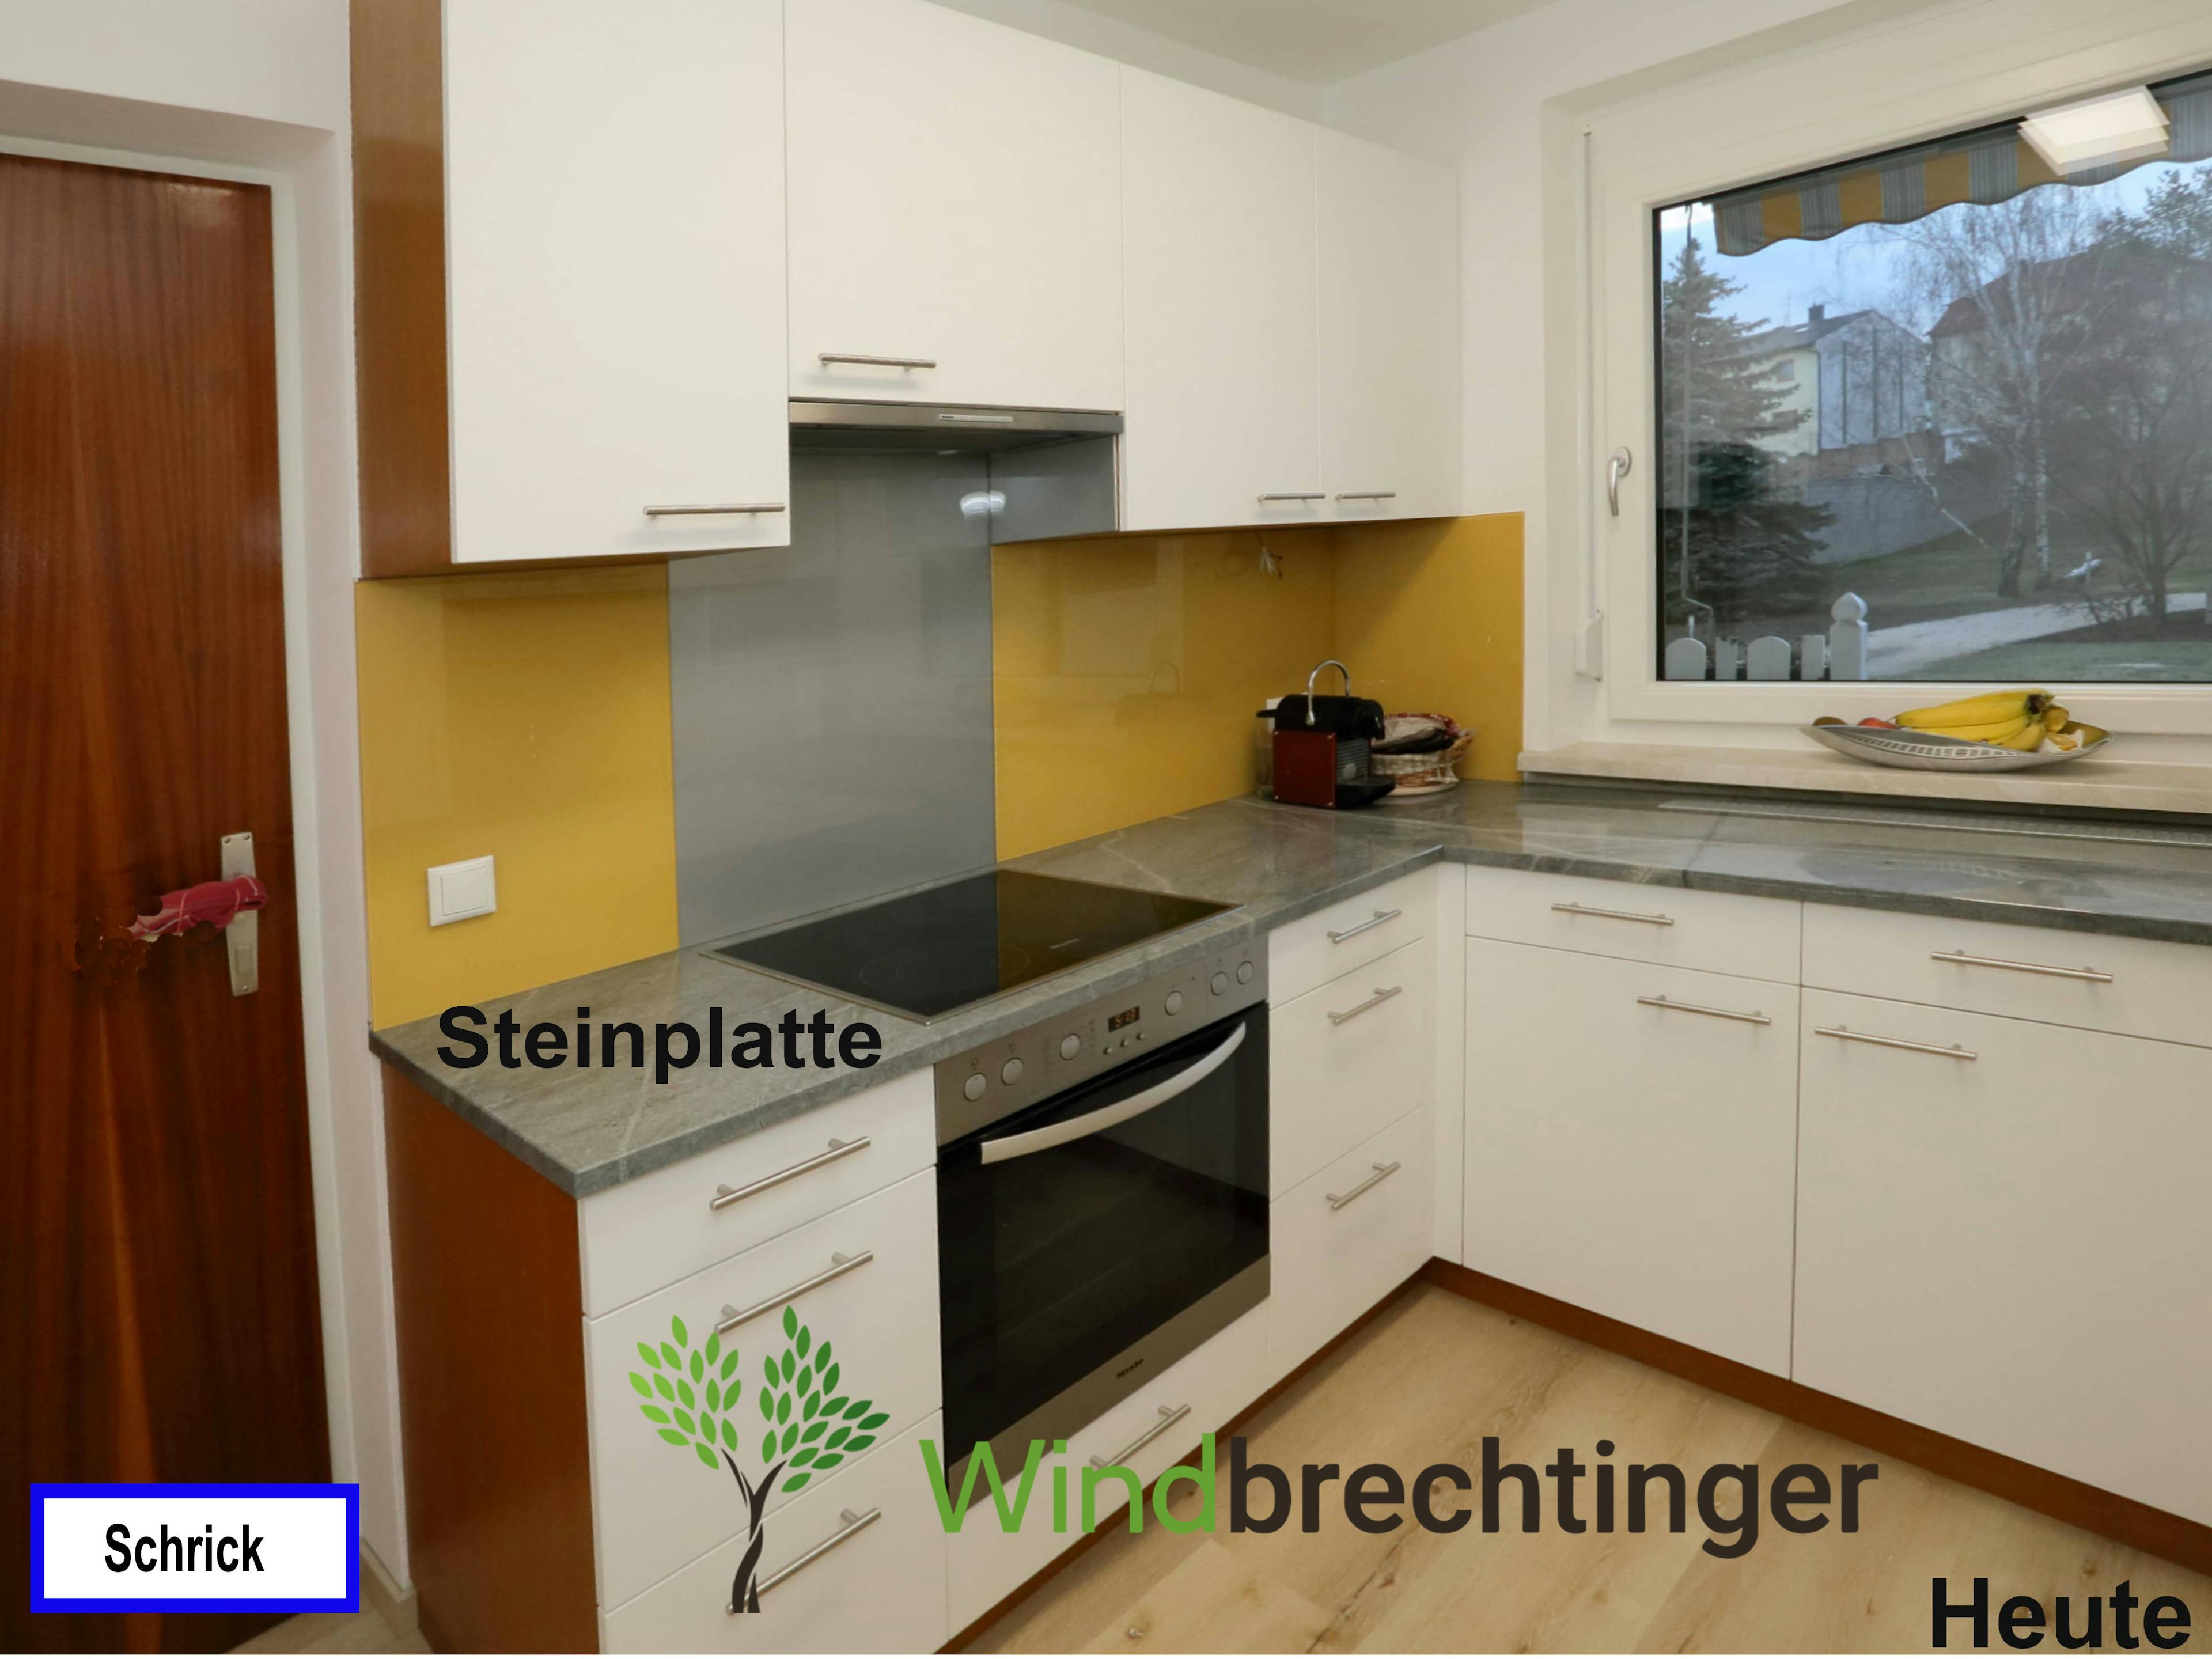 Maßgefertigte Küchensteinplatte in Mistelbach – Exklusivität von Tischlerei Windbrechtinger